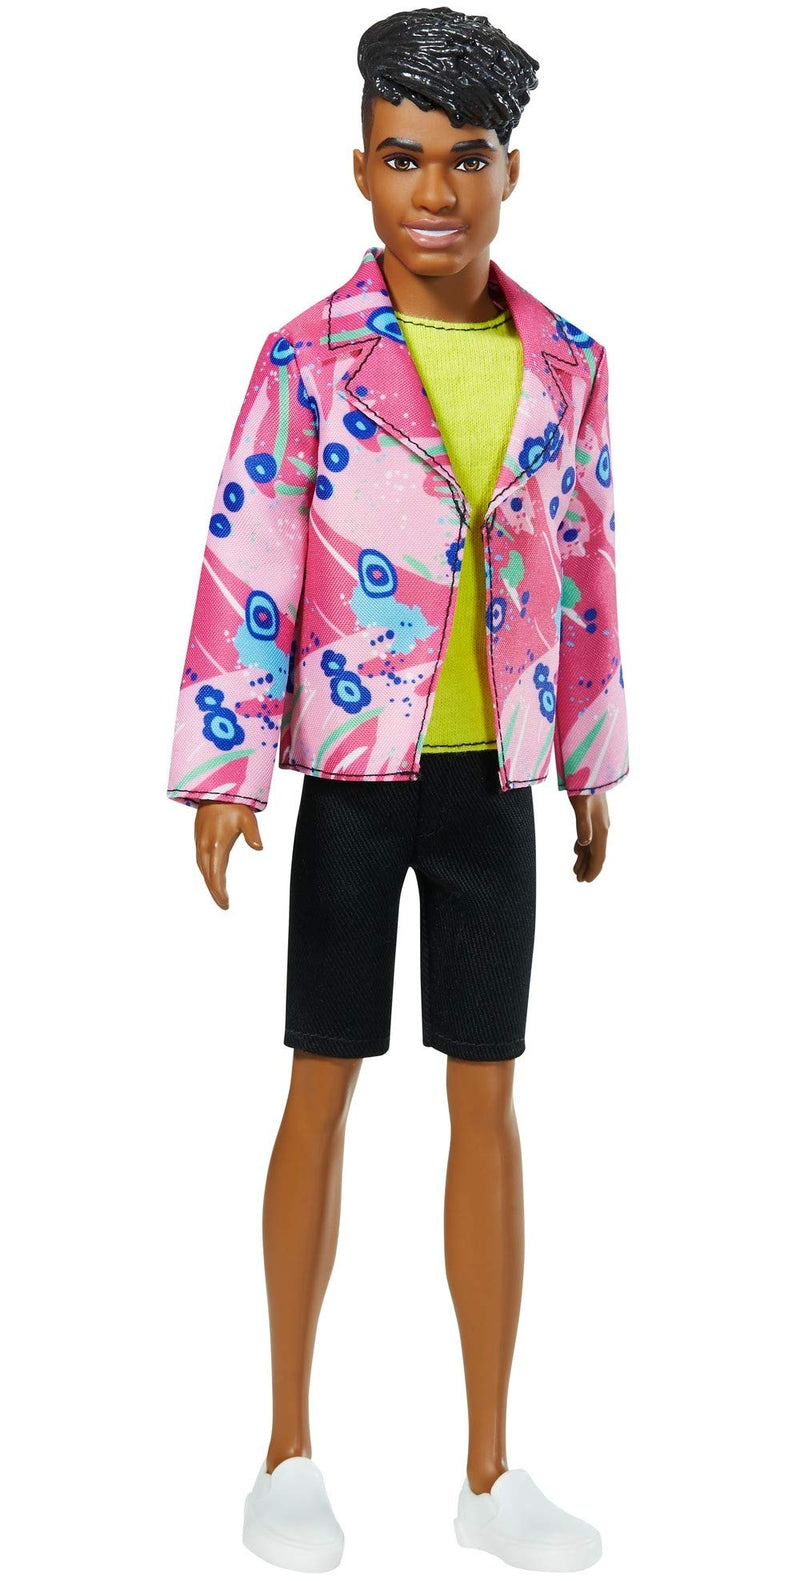 Barbie Ken 60th Anniversary Doll #3 in Throwback Rocker Look